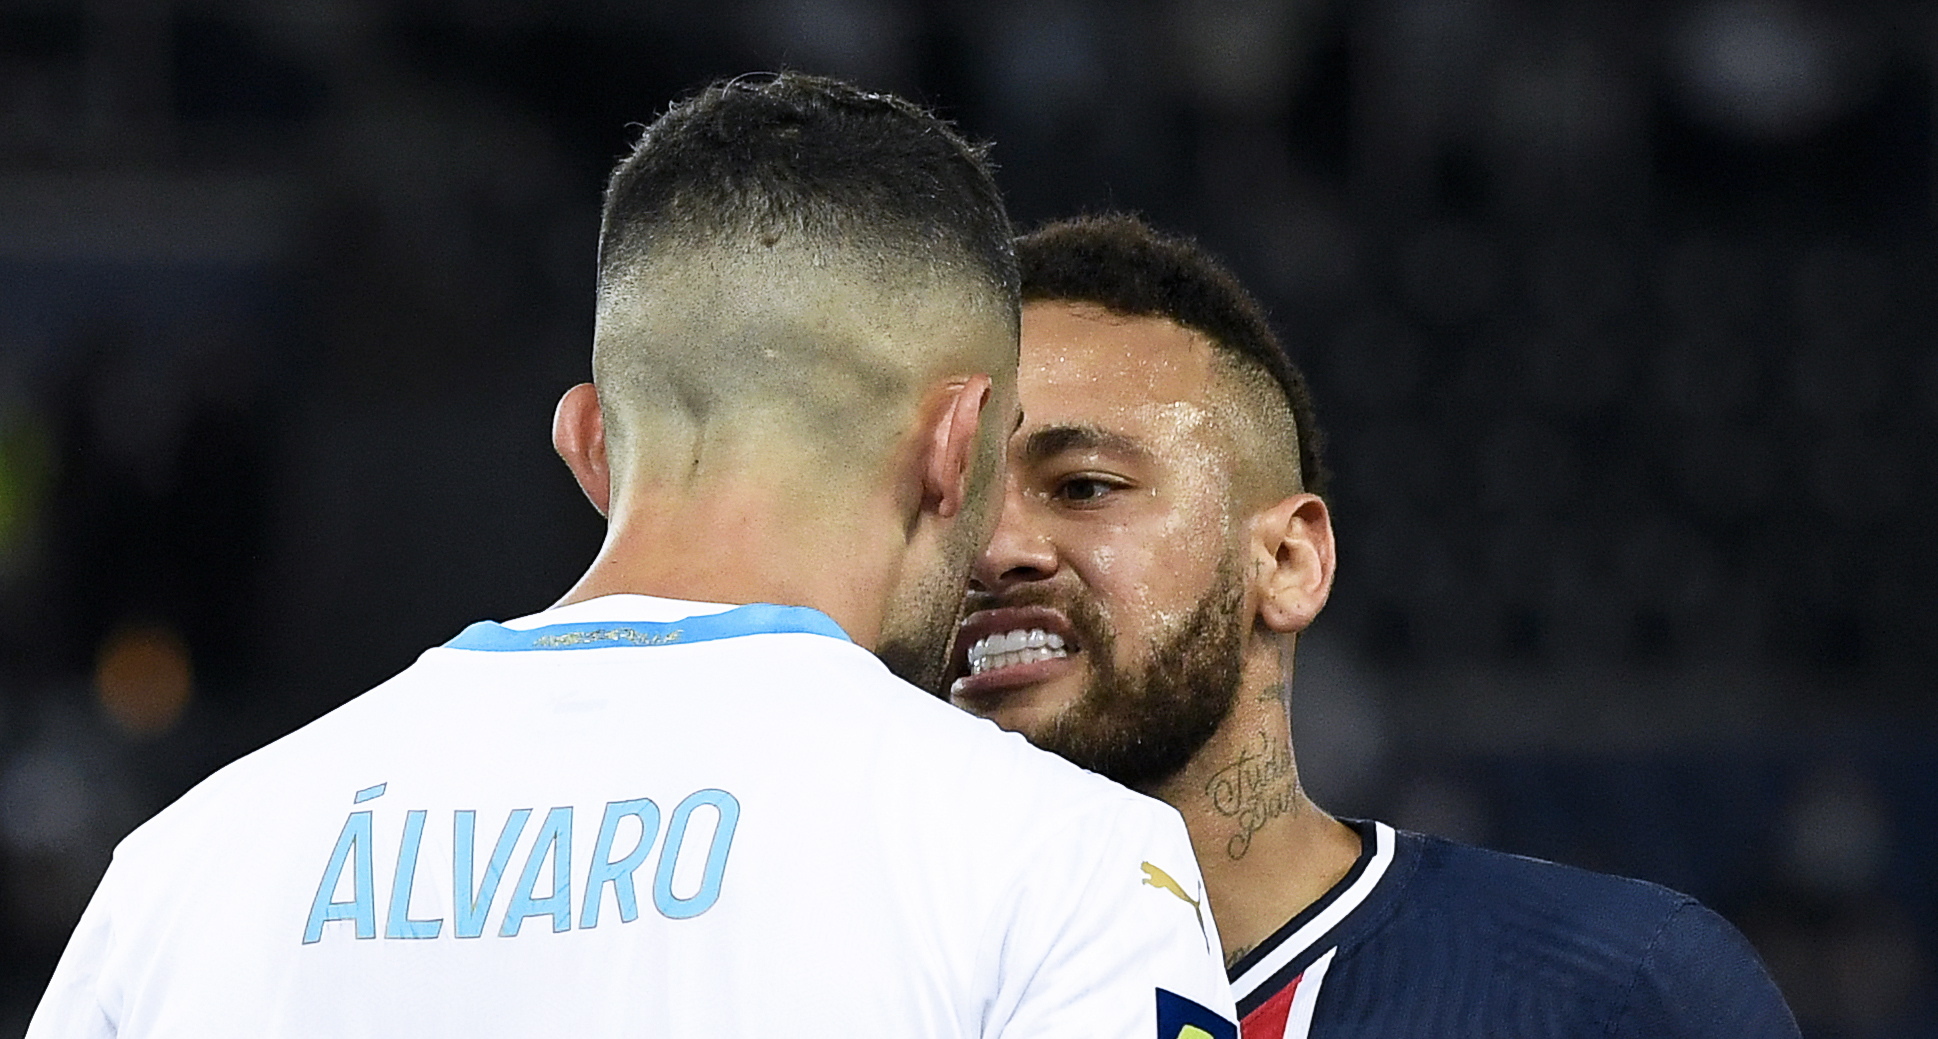 Feroz discusión en redes entre Neymar y Álvaro González tras su escandaloso cruce: “Mis padres me enseñaron a sacar la basura”